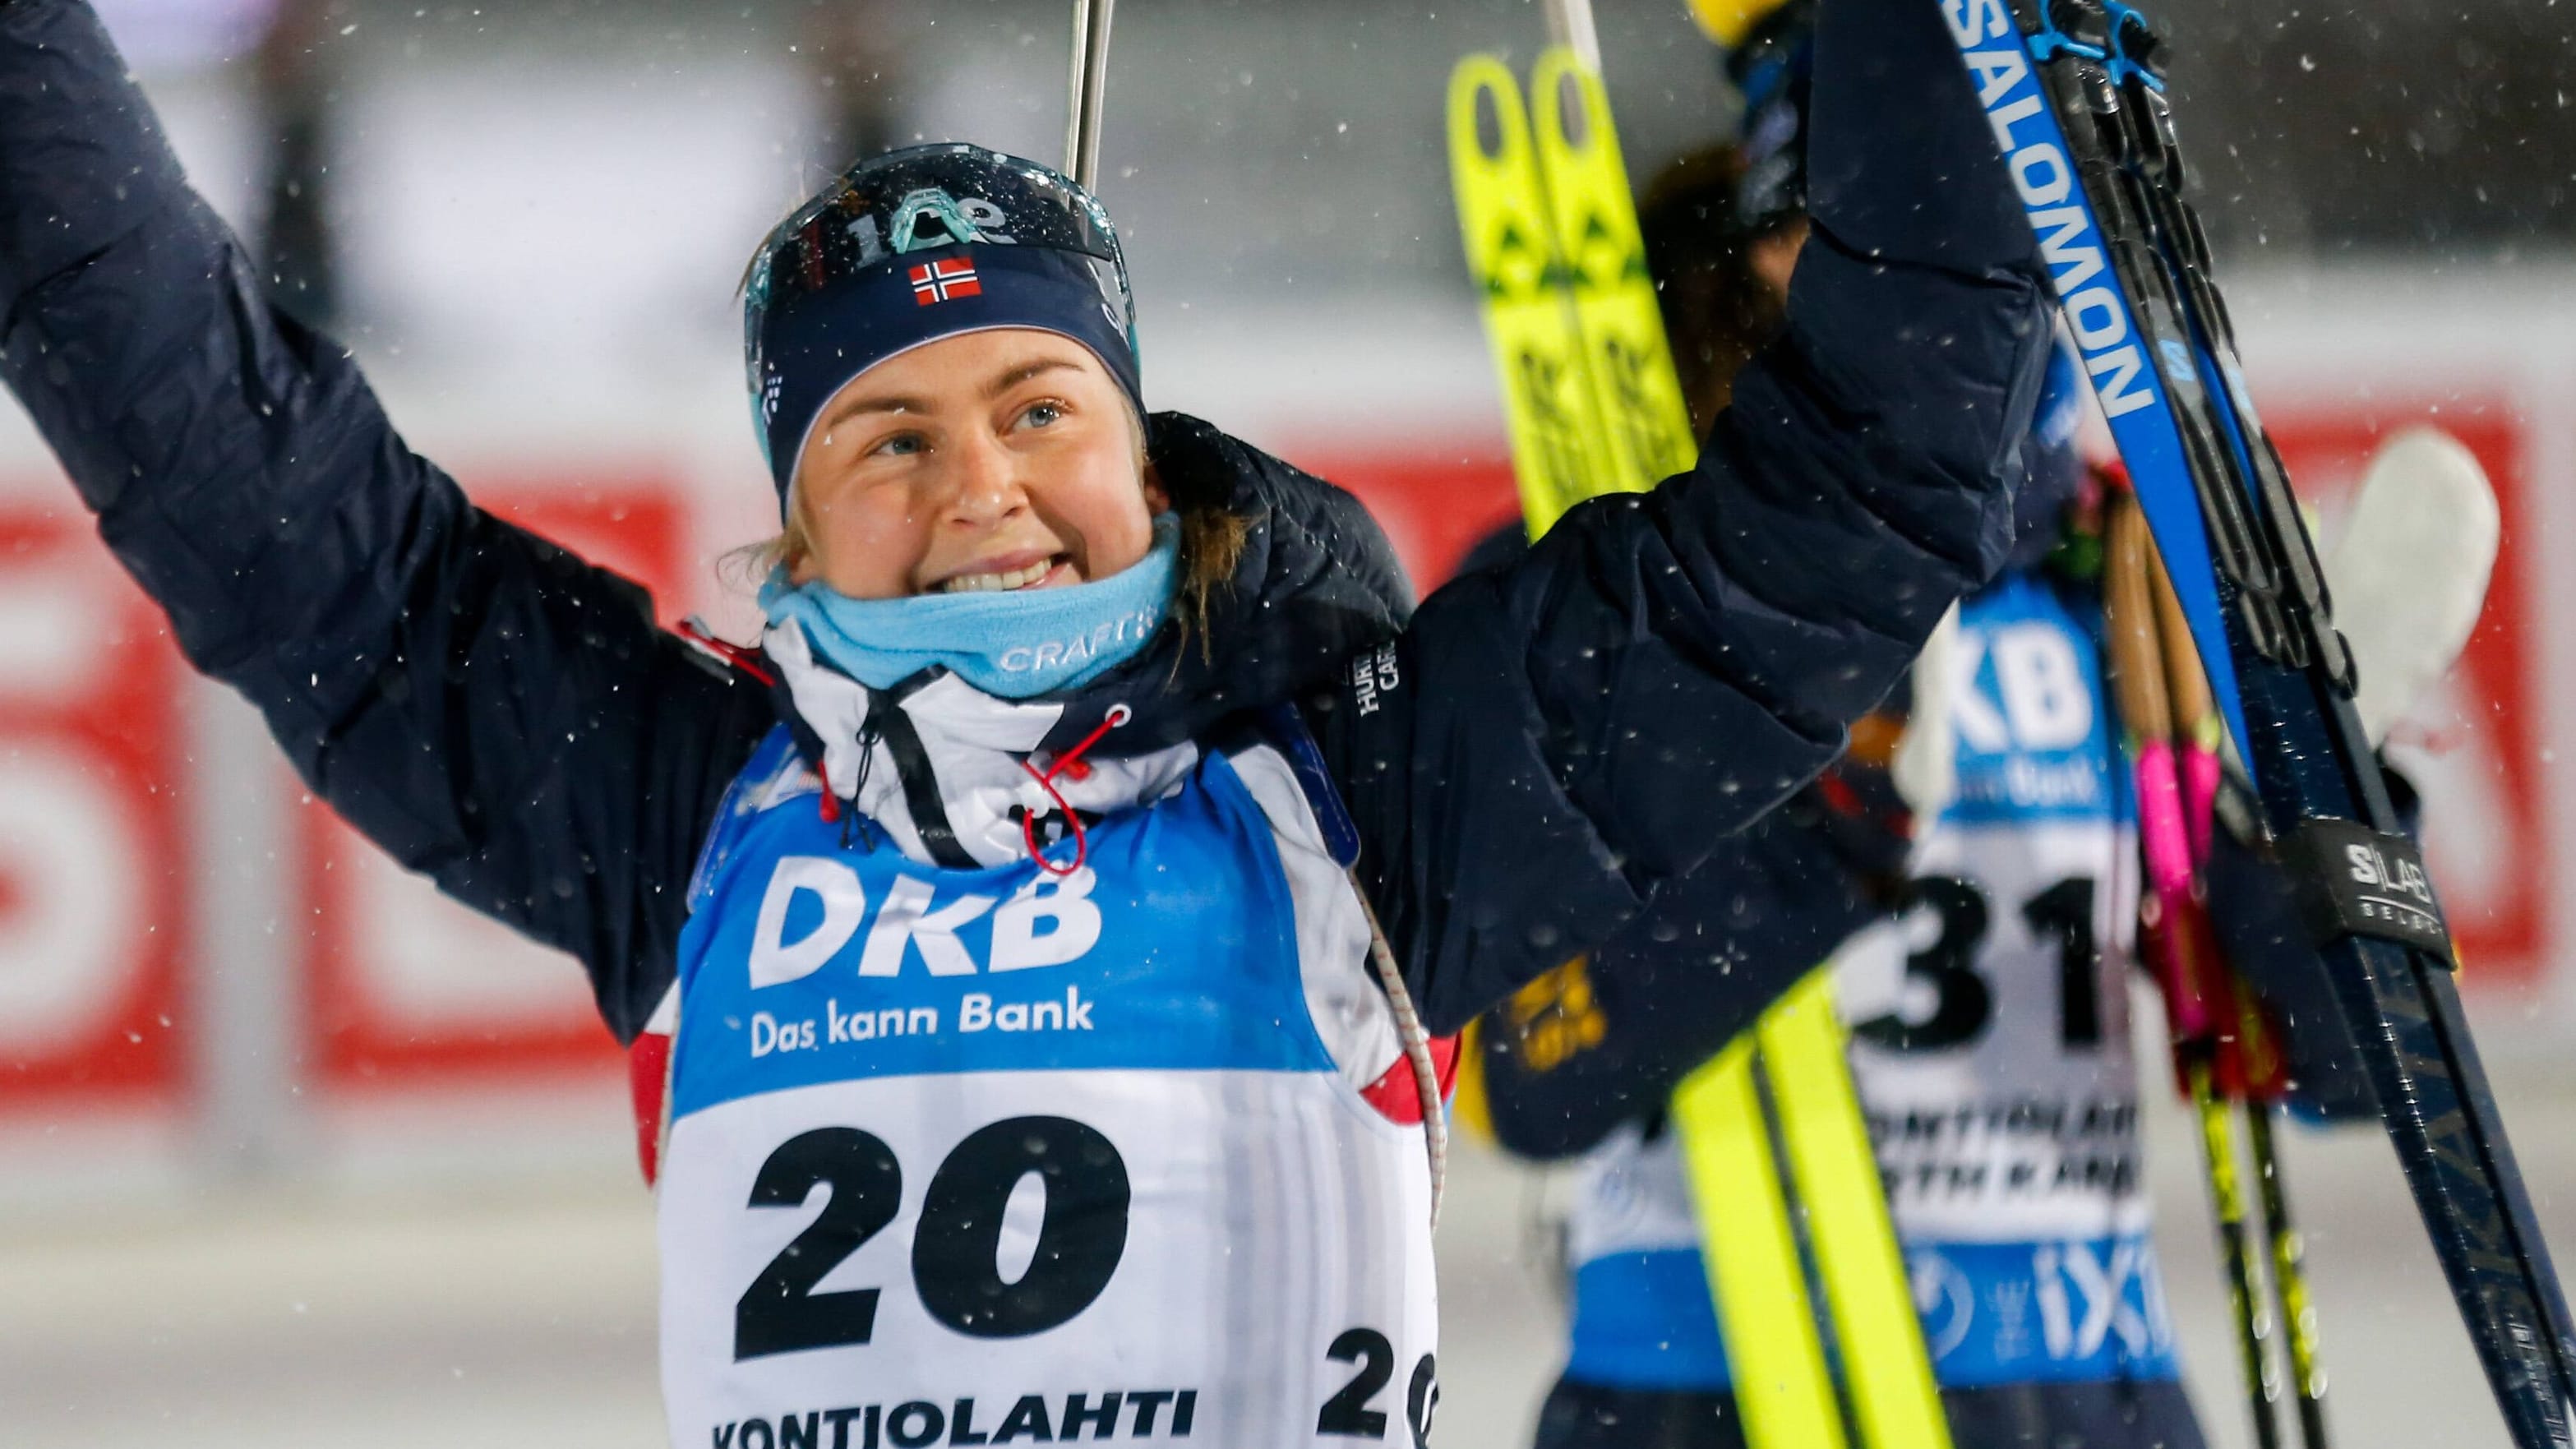 Biathlon-Star Ingrid Landmark Tandrevold ist verlobt